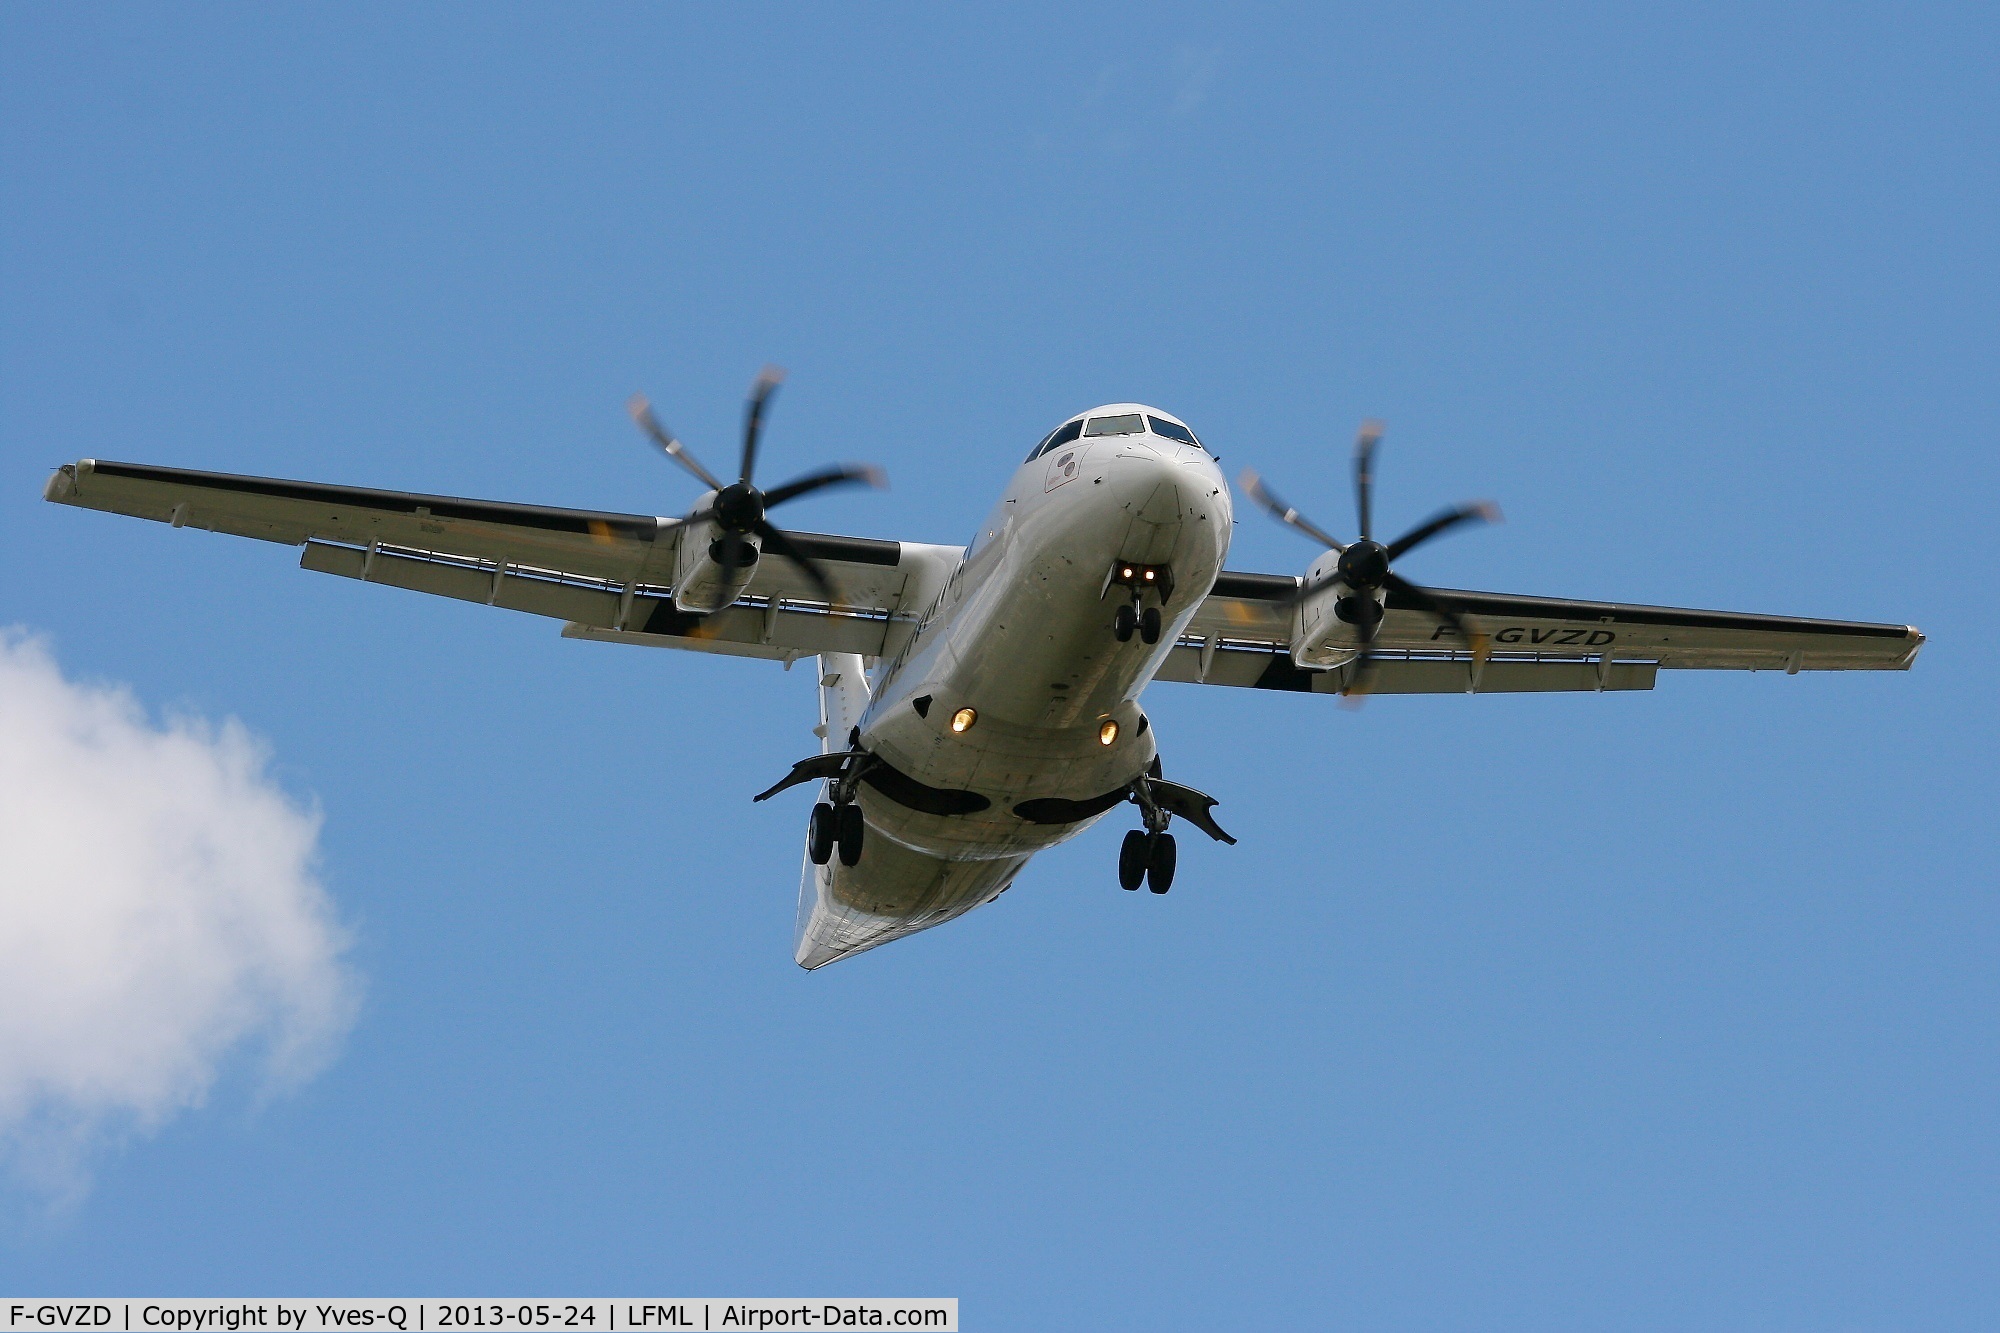 F-GVZD, 1996 ATR 42-500 C/N 530, ATR 42-500, Short approach rwy 31L, Marseille-Marignane Airport (LFML-MRS)